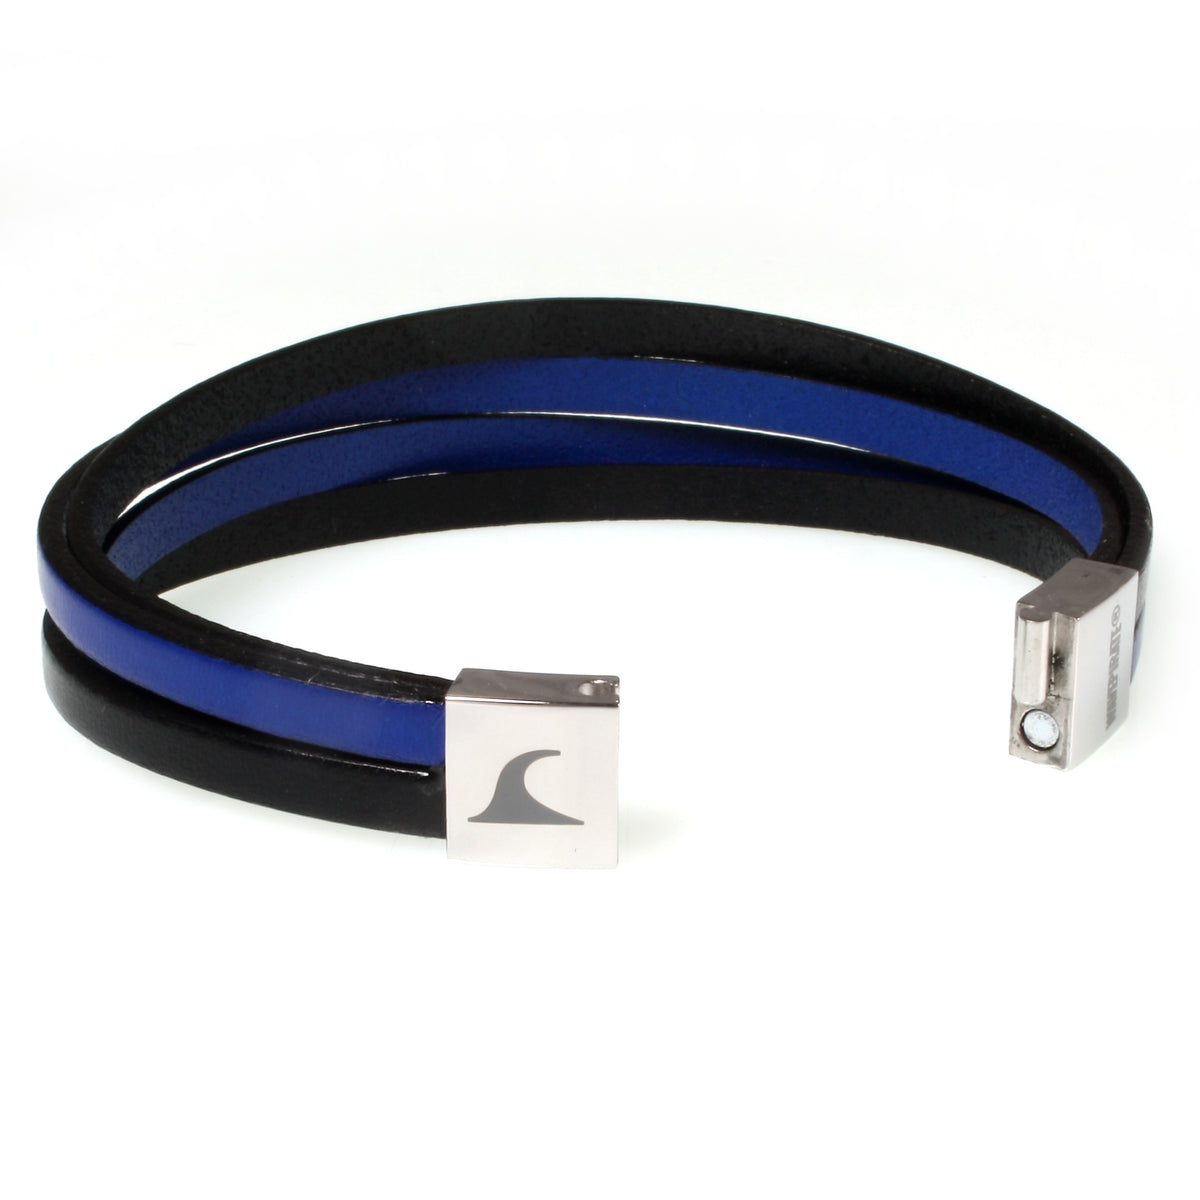 Herren-Leder-Armband-Twist-schwarz-blau-flach-Edelstahlverschluss-offen-wavepirate-shop